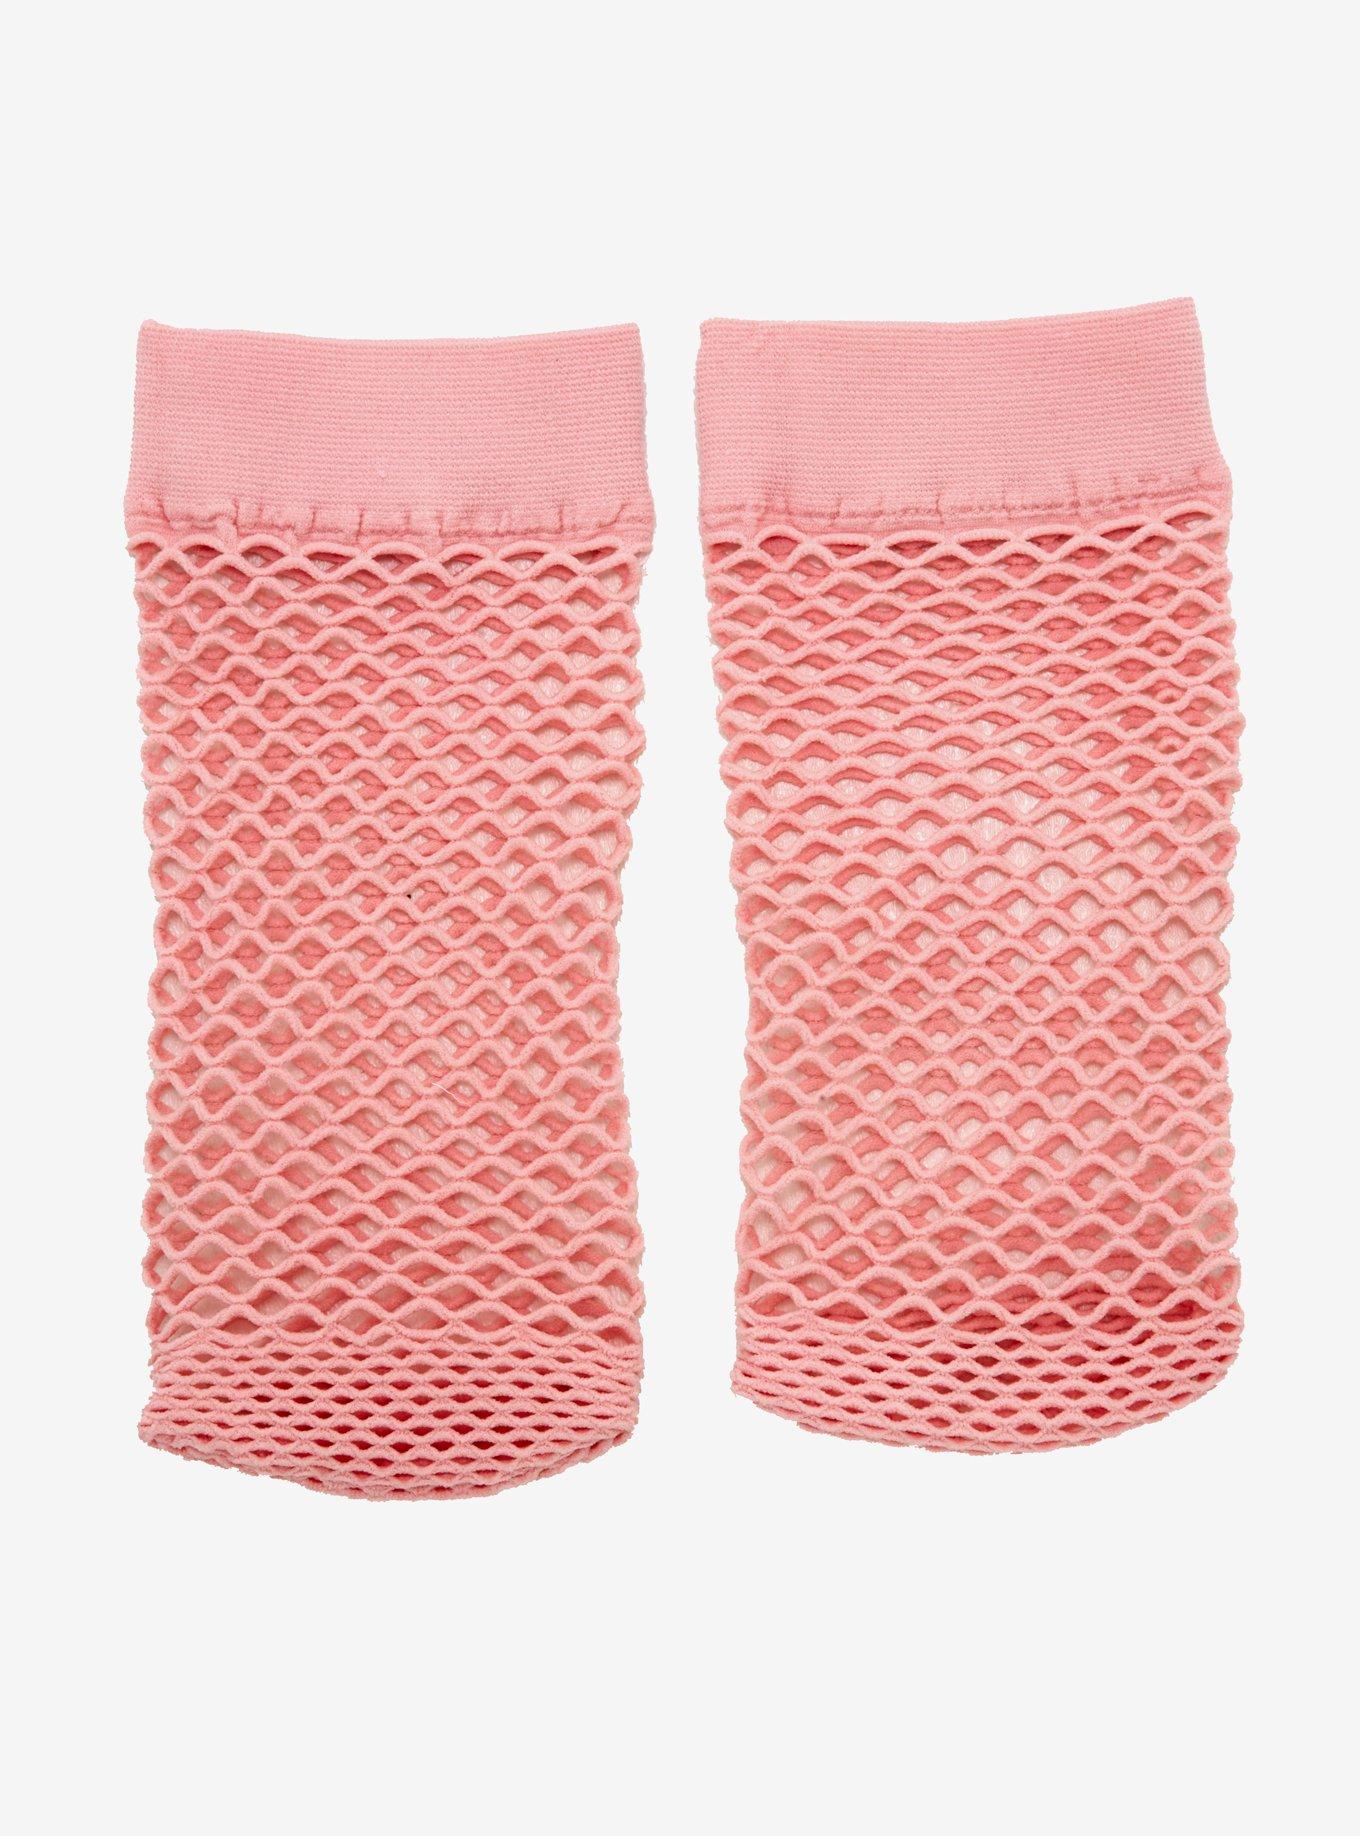 Fishnet Socks, RED, alternate